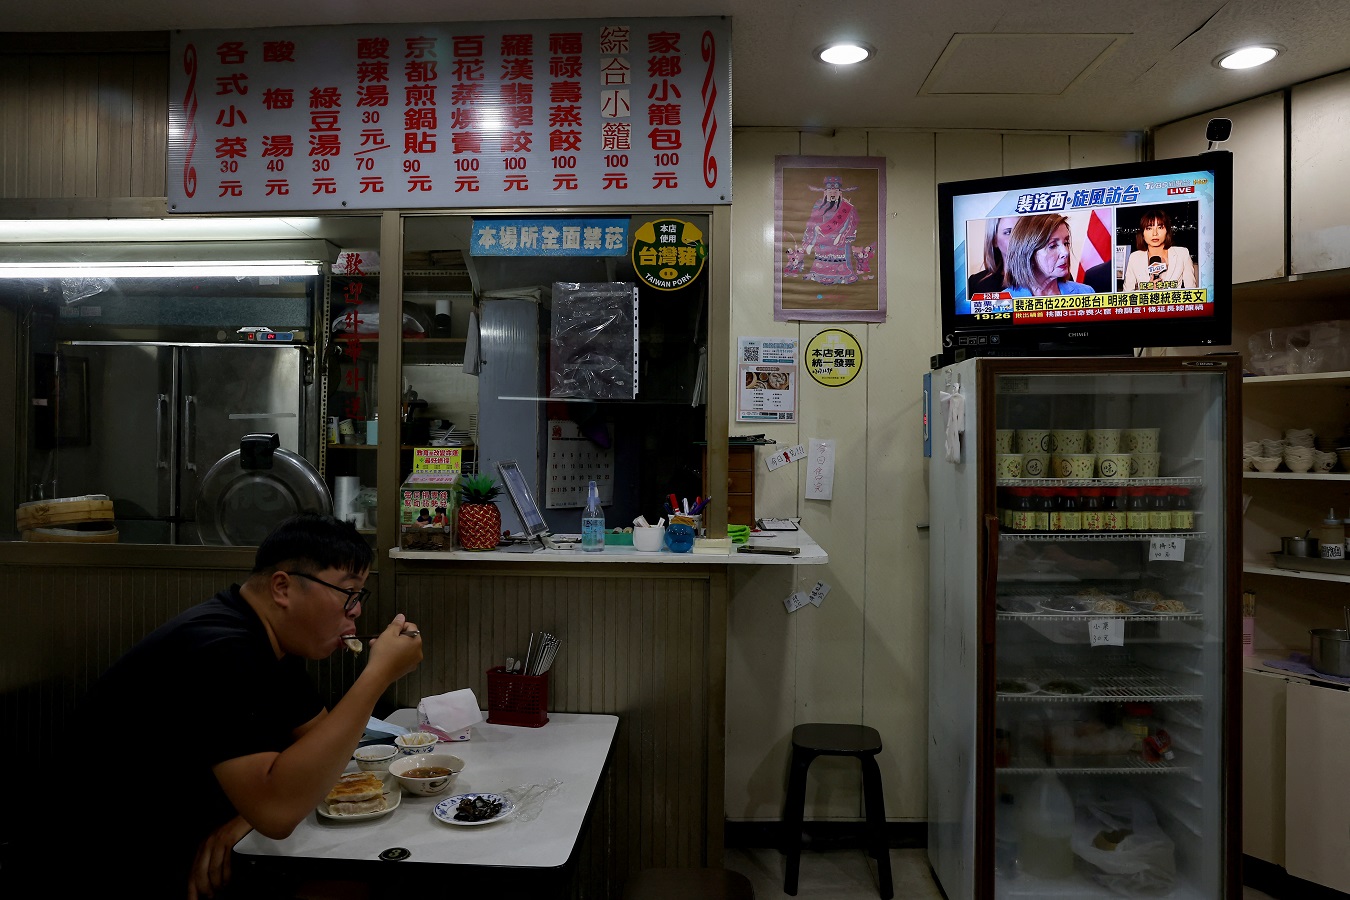 Un hombre almuerza en un restaurante de Taipei, la capital de Taiwan, mientras en la televisión informan sobre la visita de la presidenta de la Cámara de Representantes de EEUU, Nancy Pelosi. REUTERS/Ann Wang